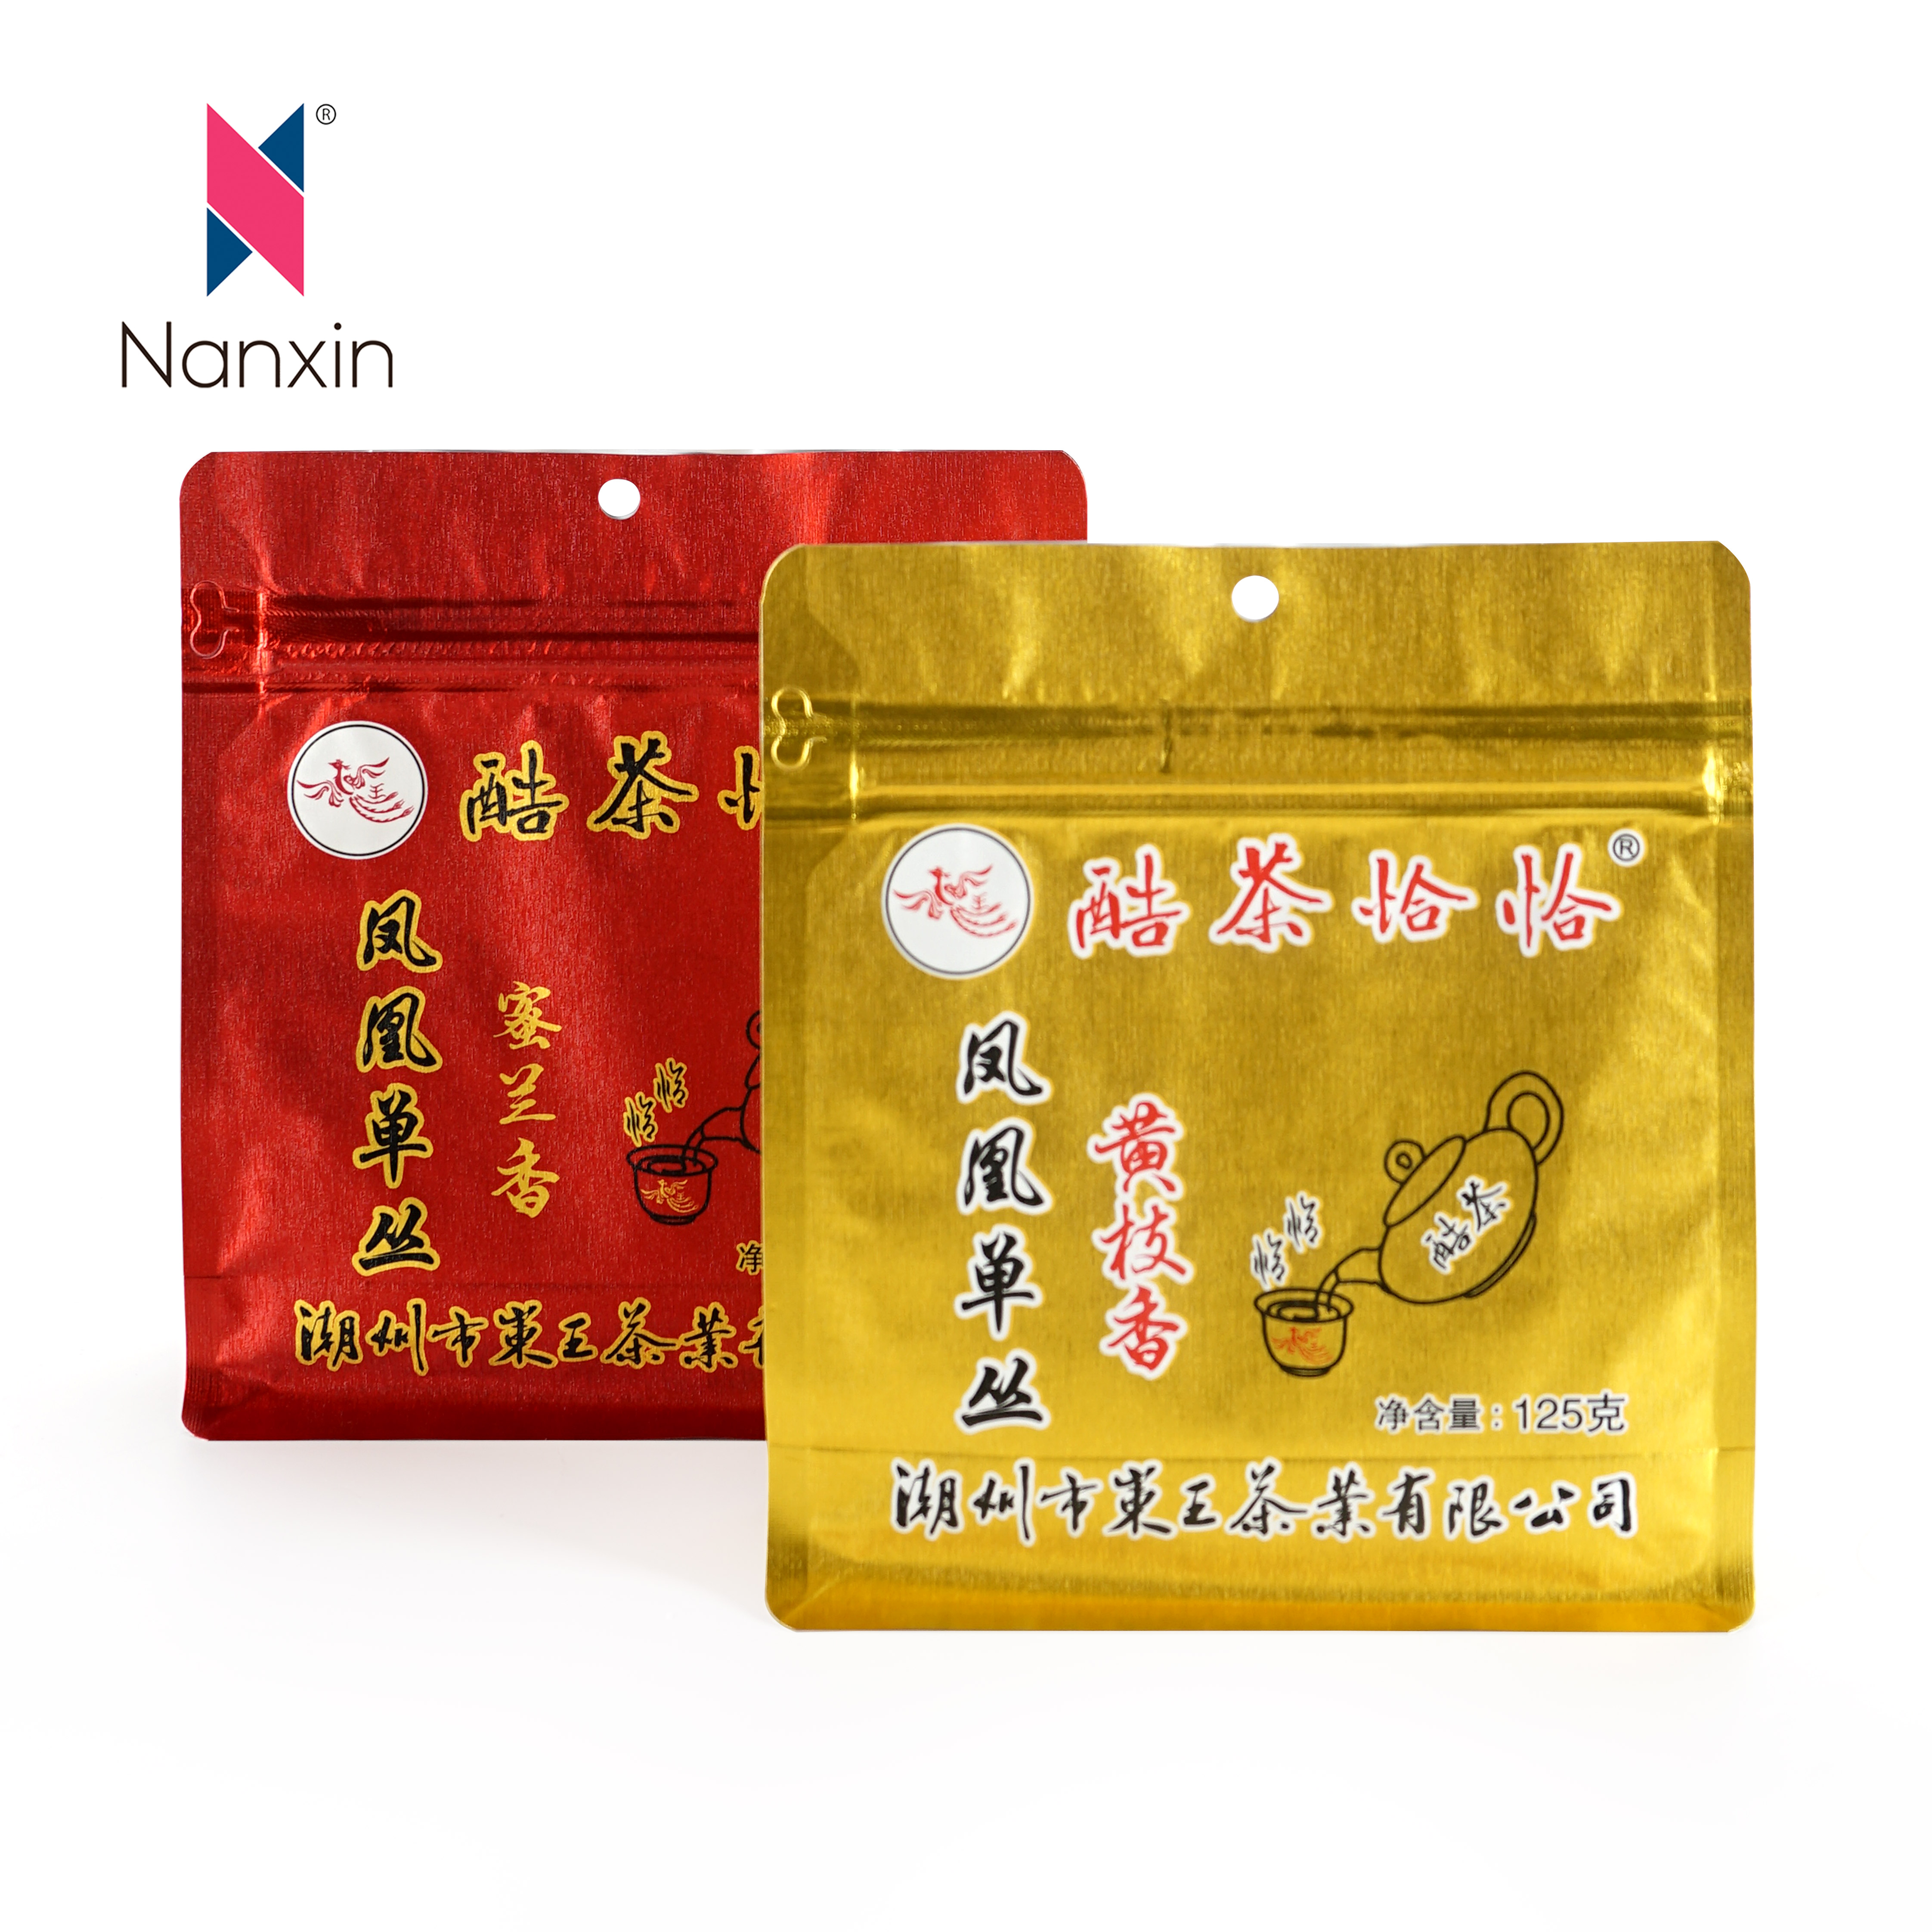 Sac d'emballage alimentaire en plastique imprimé à fond plat, Film doré pour thé chinois en métal, 500g, offre spéciale